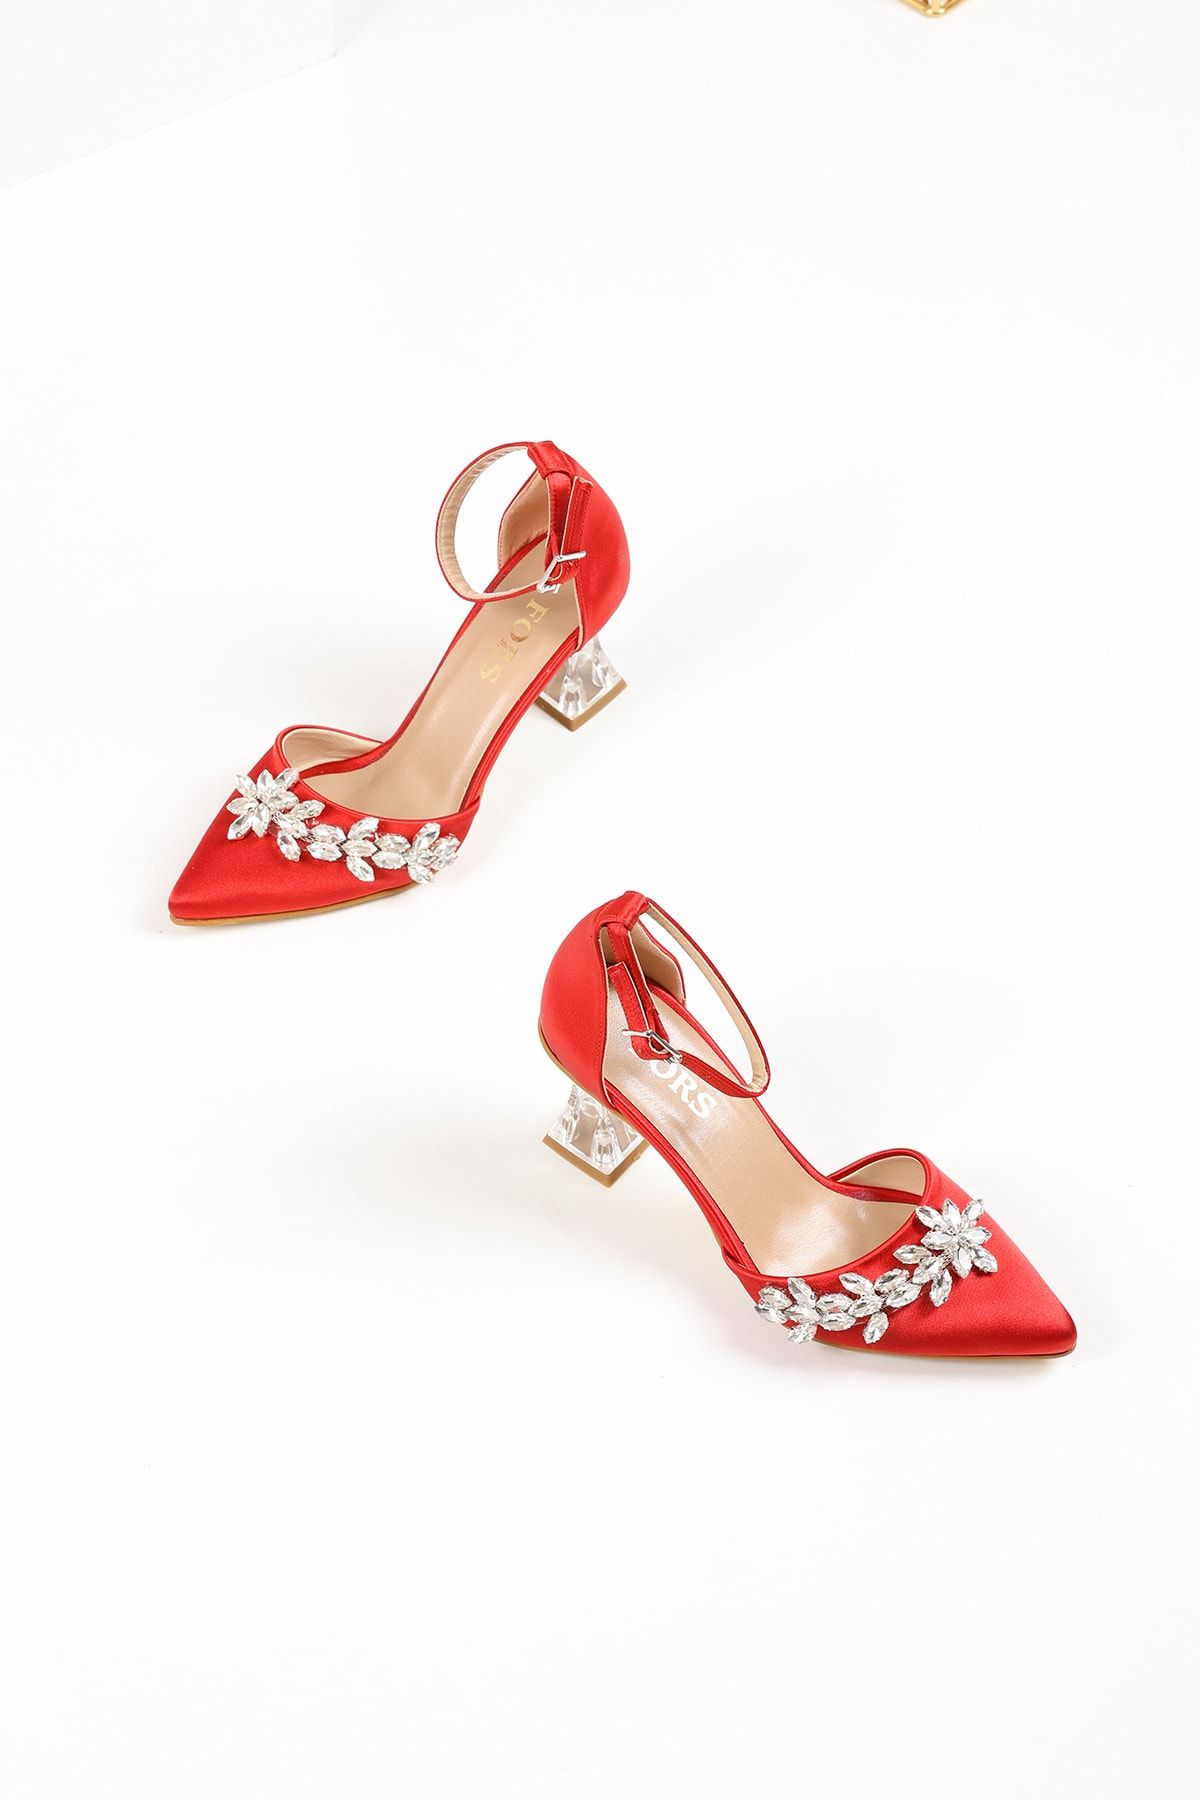 FORS SHOES Kadın Kırmızı Saten Taş Detaylı Şeffaf Topuk Kadın Topuklu Abiye Ayakkabı 7,5 Cm